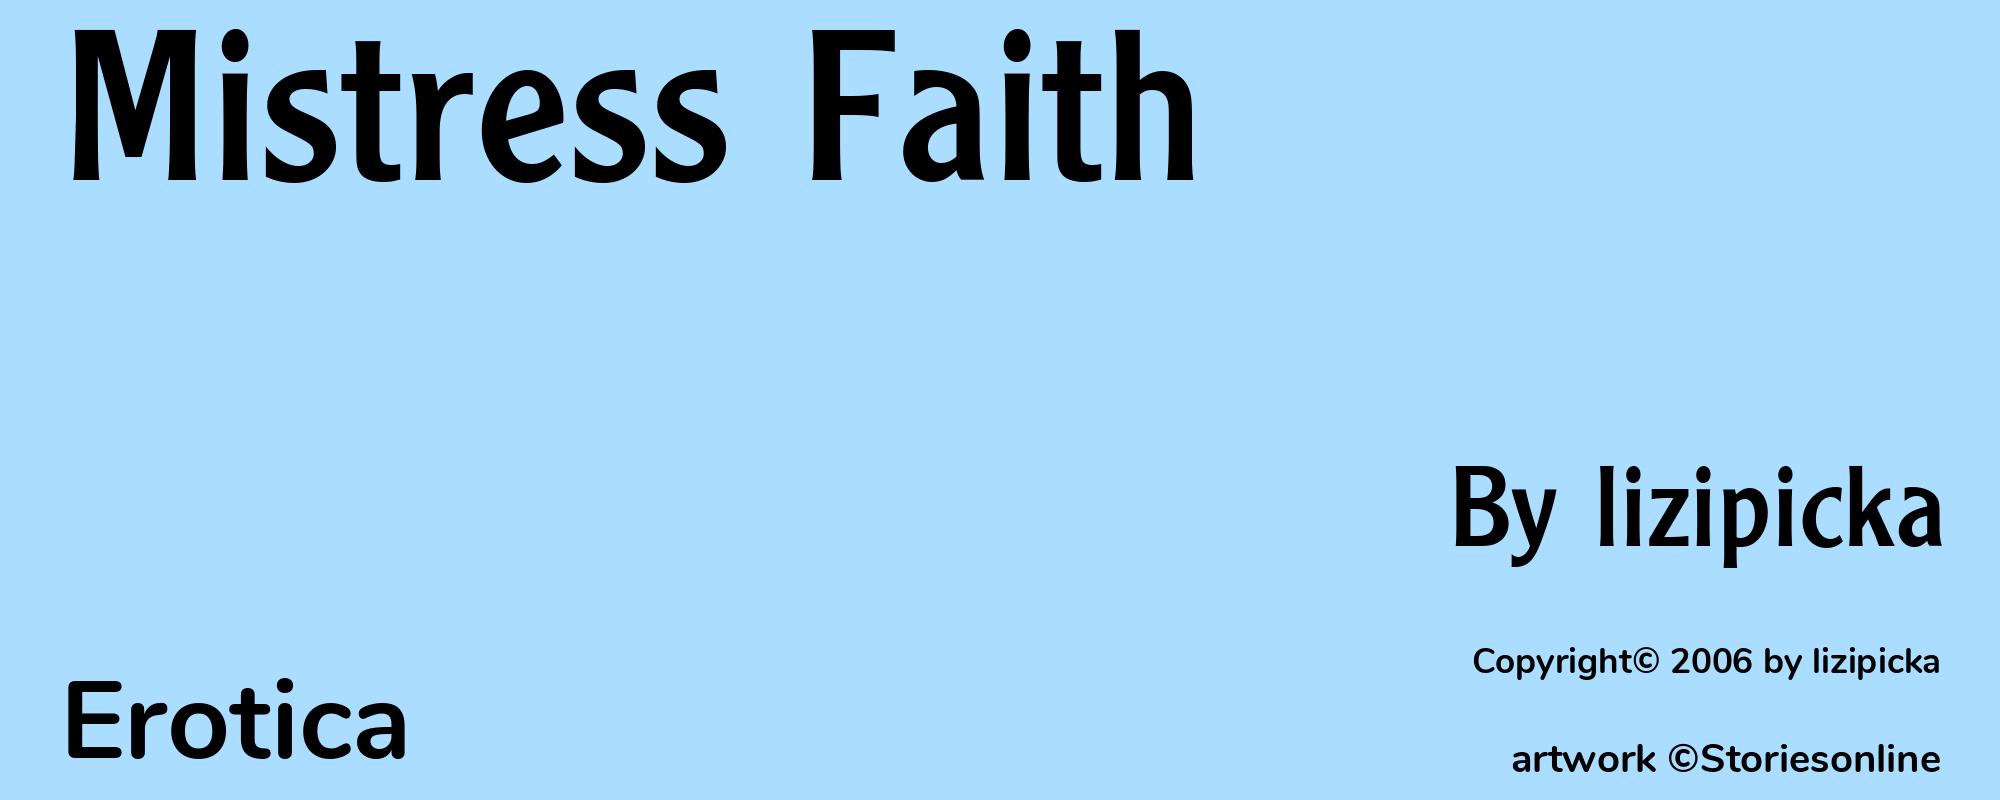 Mistress Faith - Cover